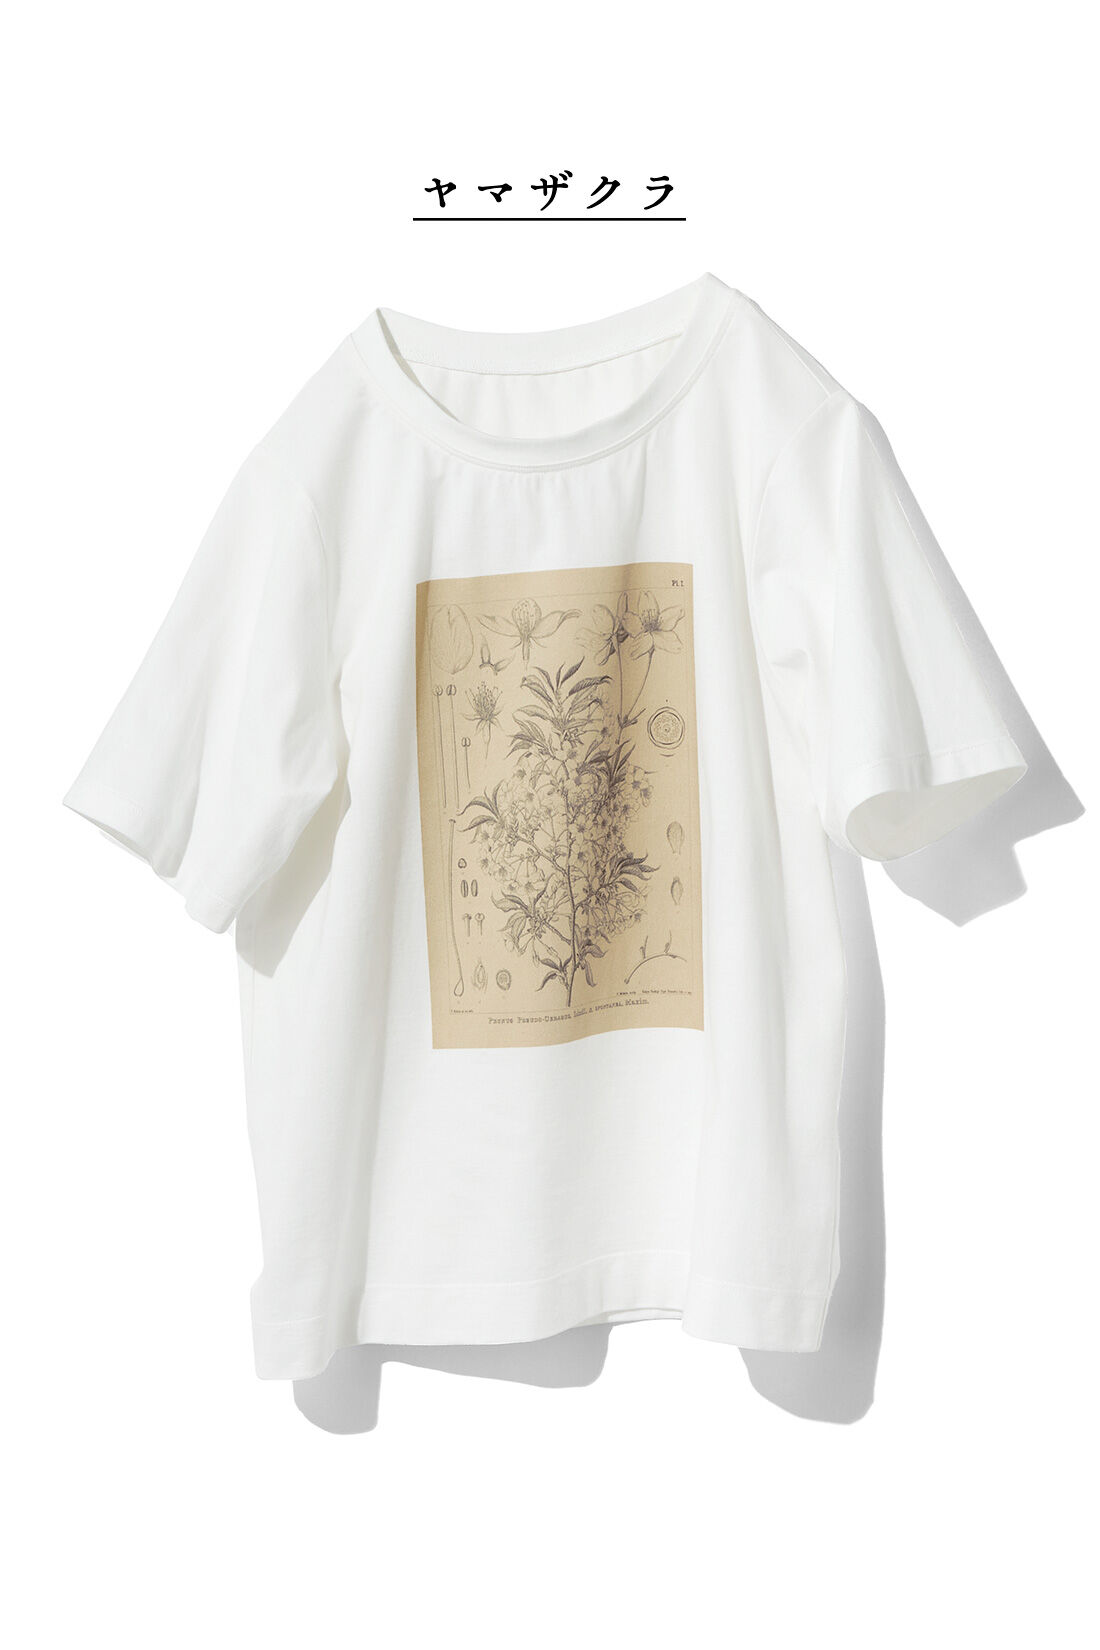 イディット|牧野植物園×IEDIT[イディット]コラボ　植物図Tシャツ〈ヤマザクラ〉